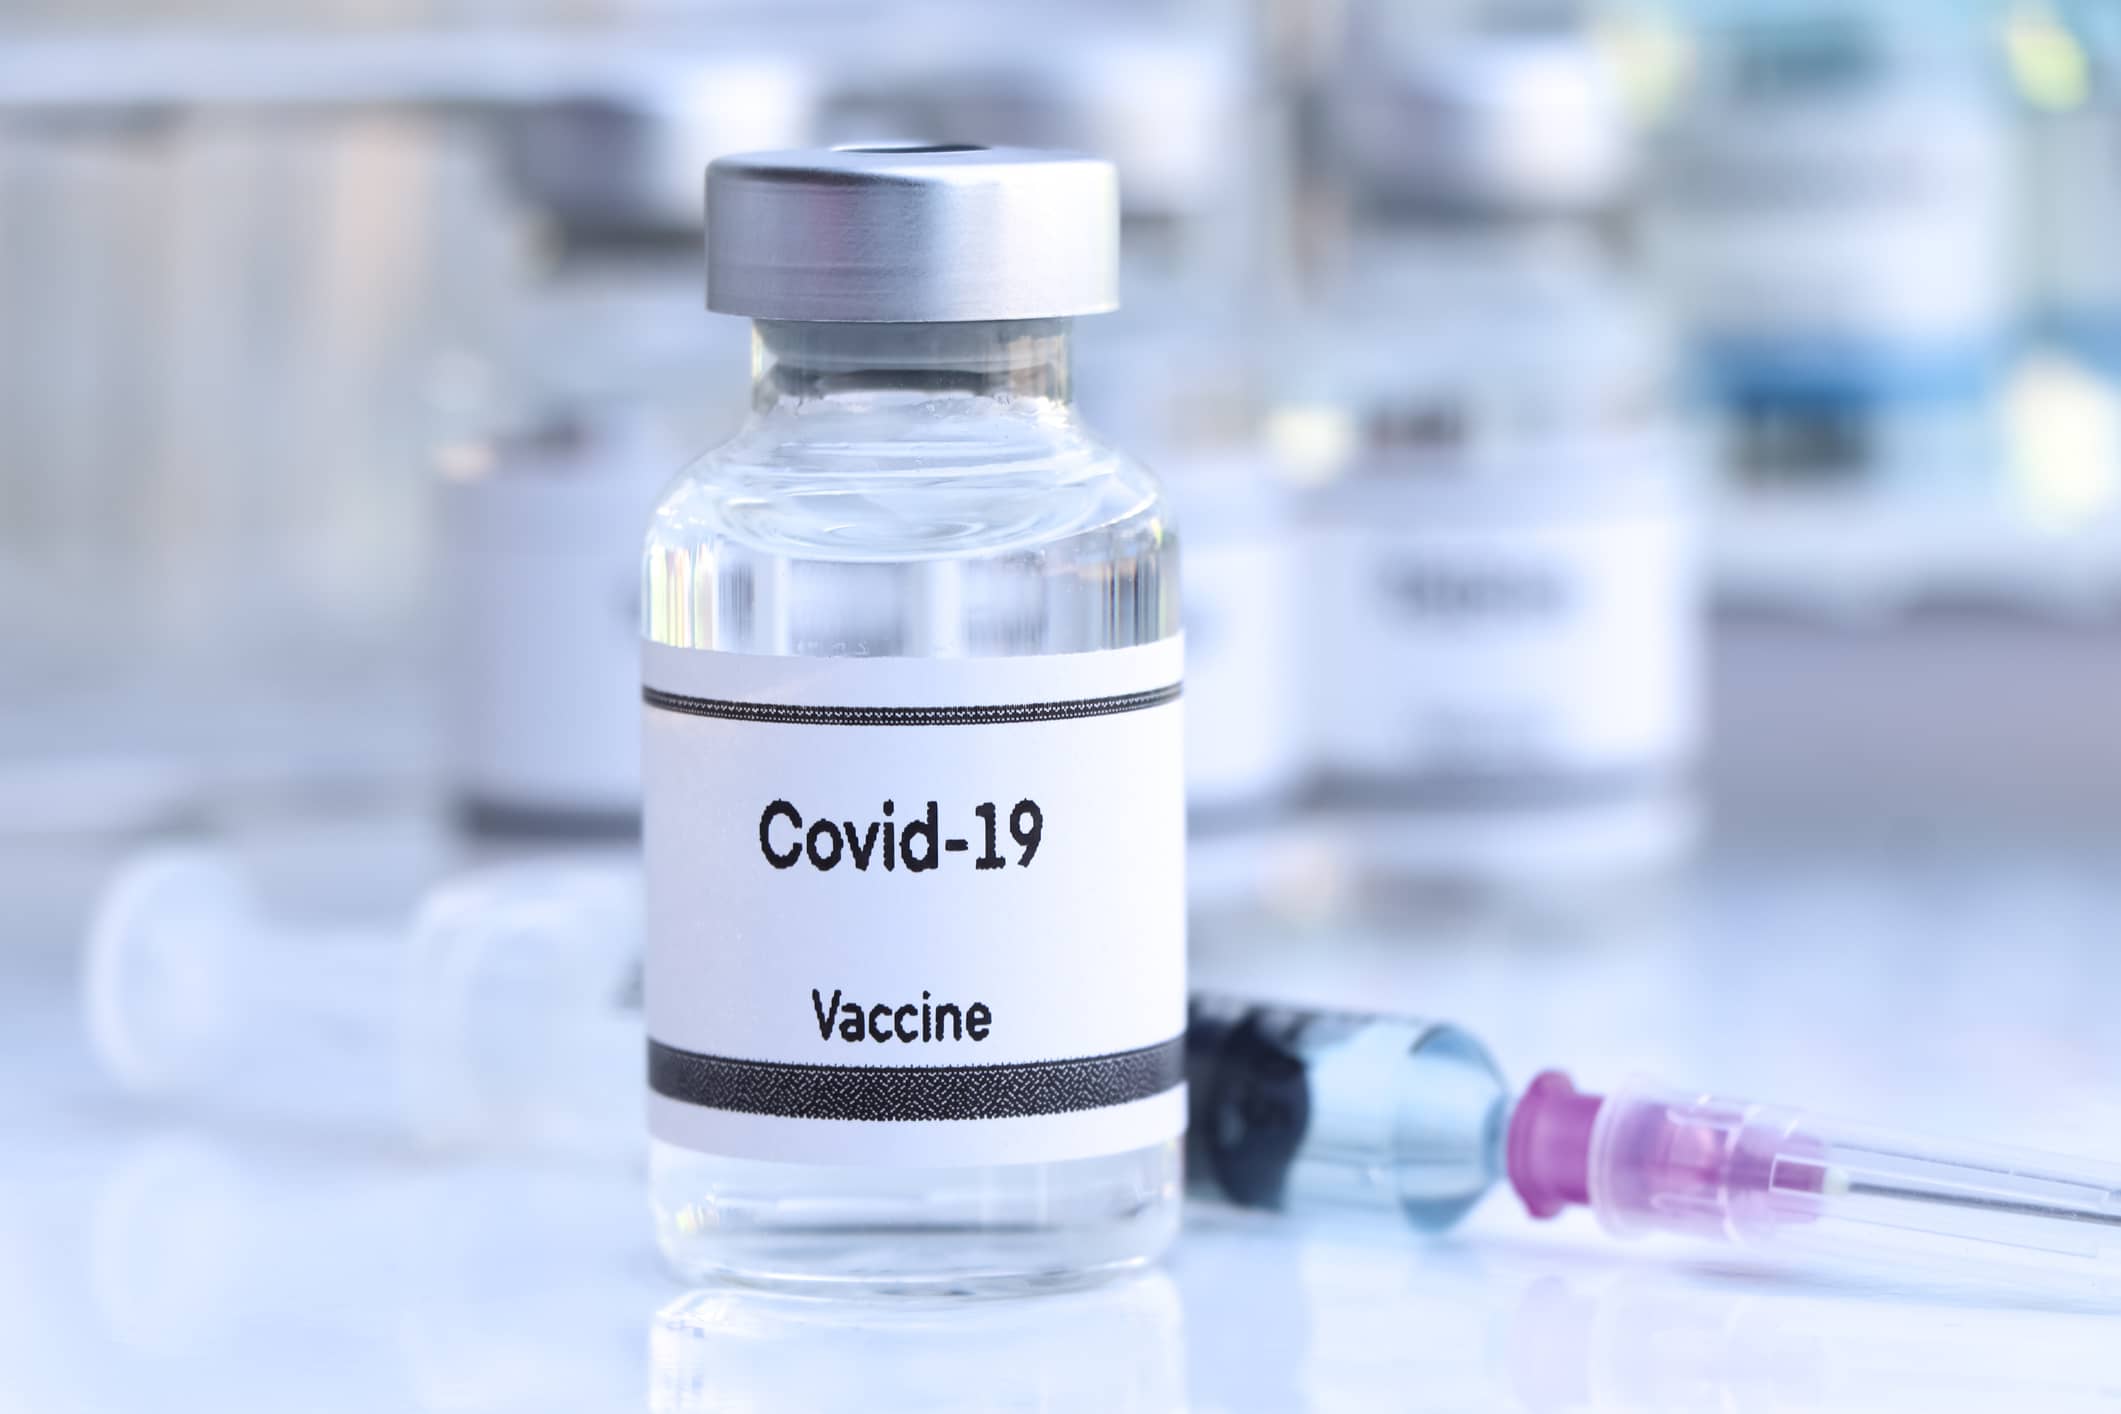 La prochaine campagne de vaccination de la Covid-19 sera lancée mi-avril